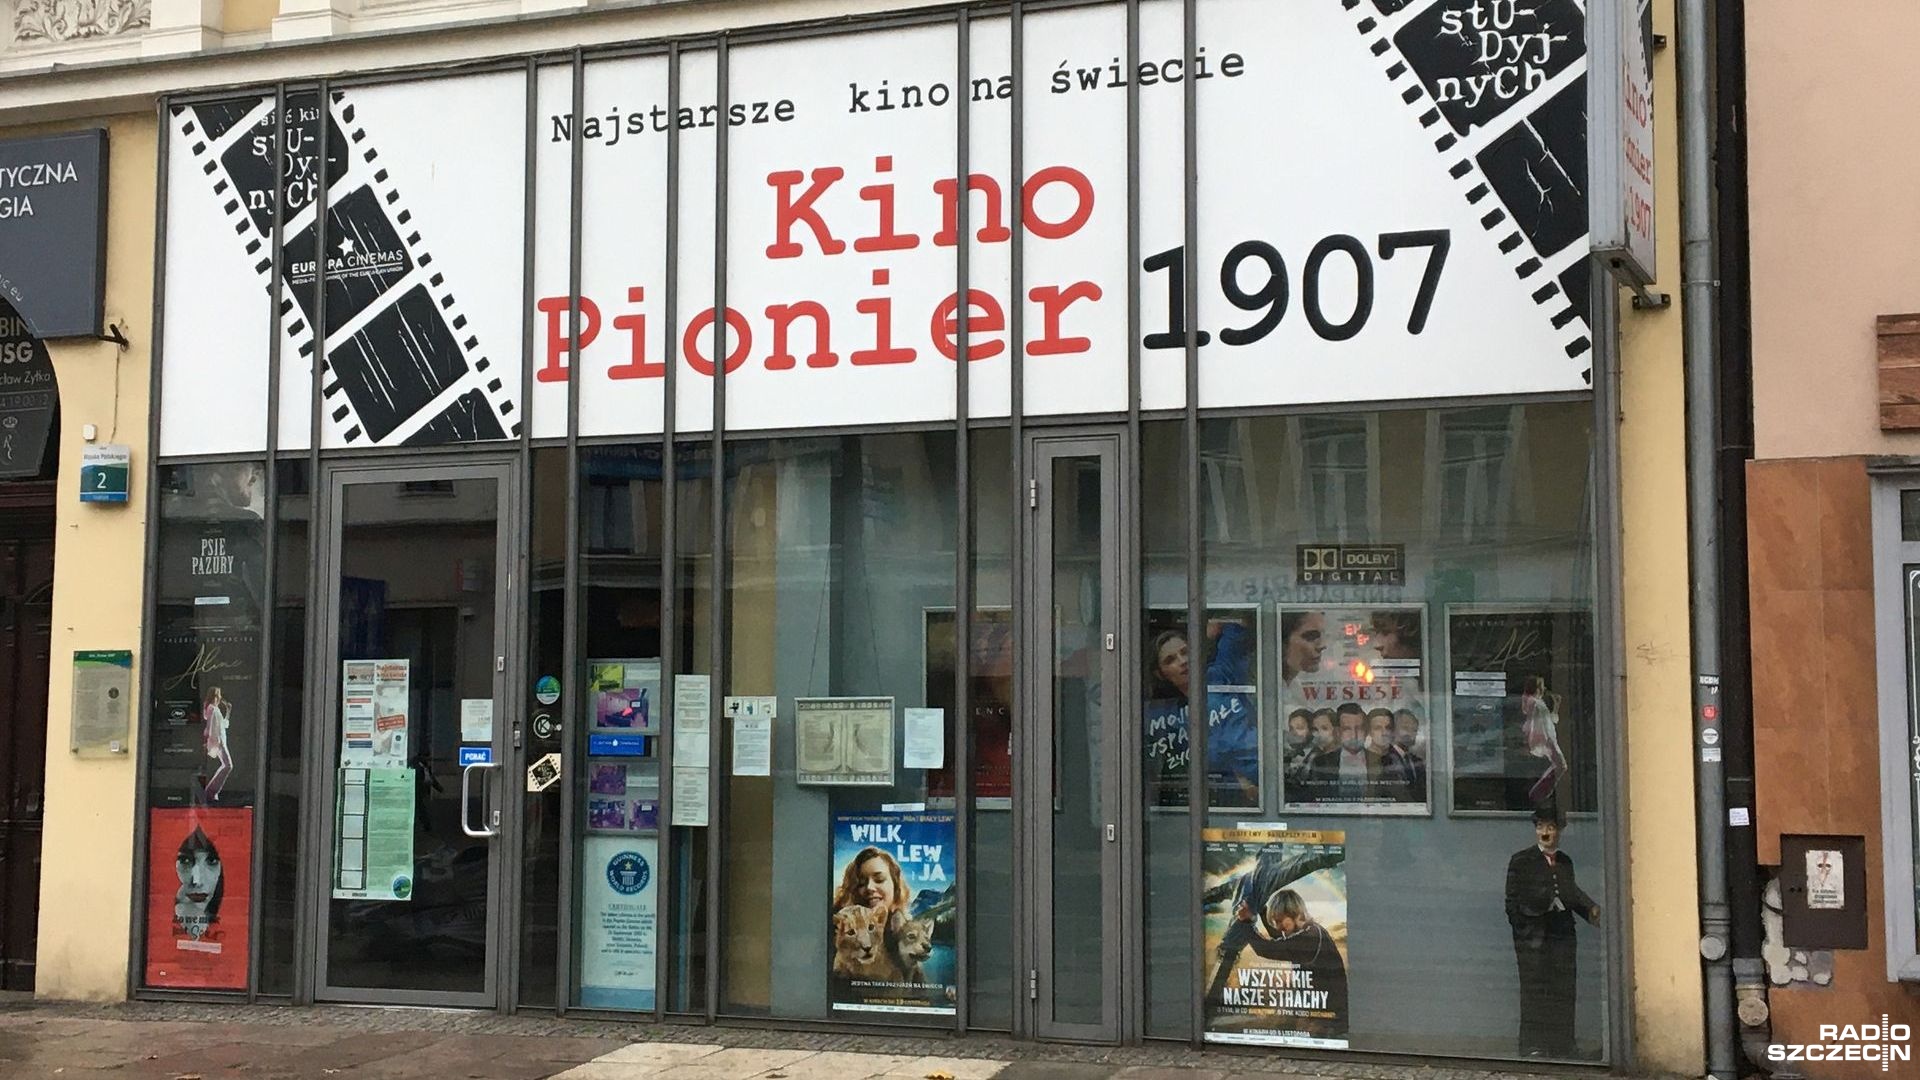 Miasto oficjalnie przejęło Kino Pionier w Szczecinie. W środę zastępca prezydenta Anna Szotkowska podpisała akt notarialny.